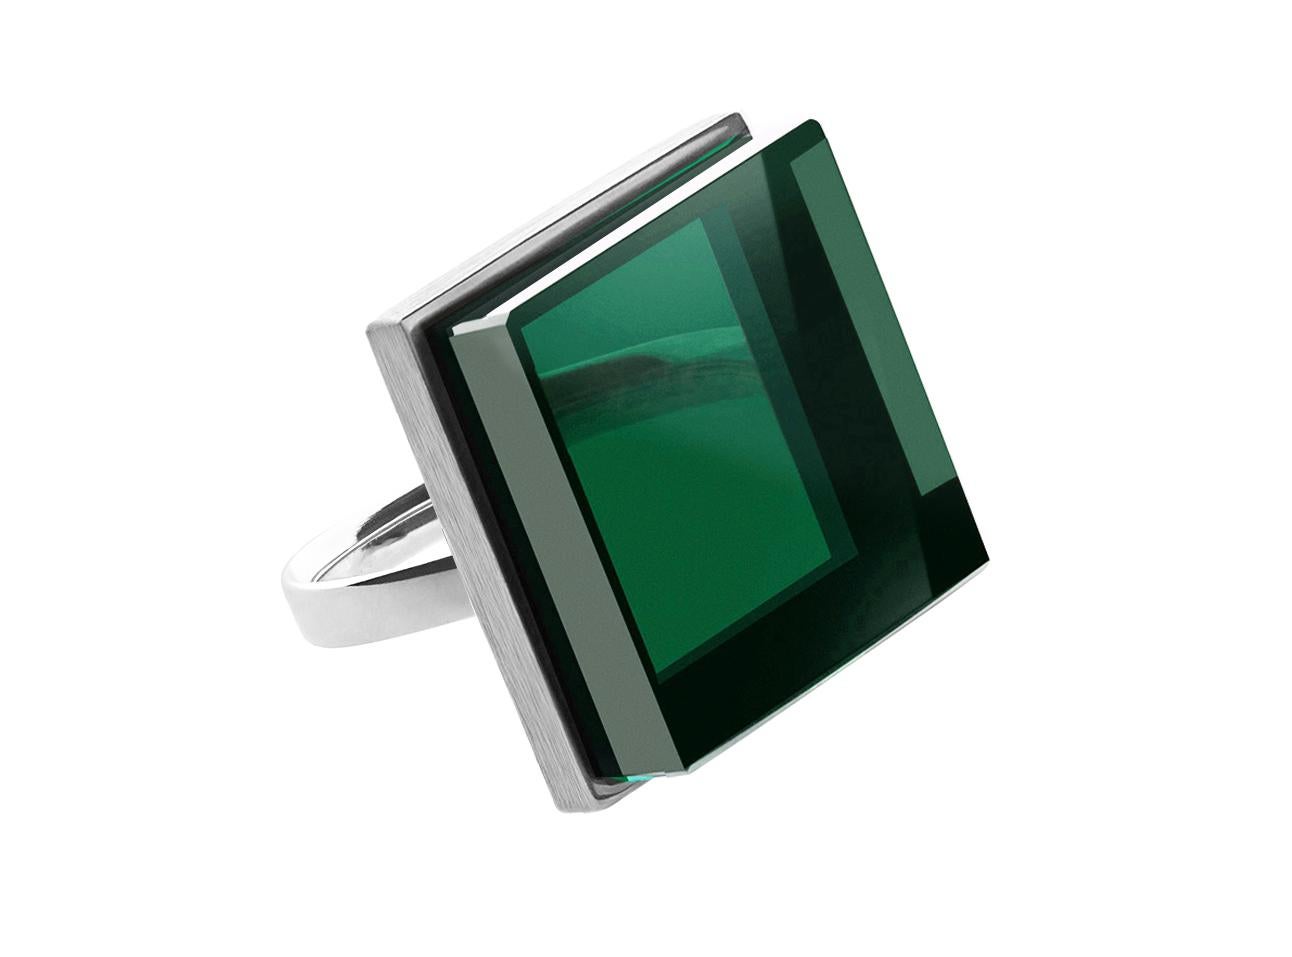 Dieser modische Ring besteht aus einem 20x20x6 mm großen grünen Quarz, der in 18 Karat Weißgold gefasst ist. Sie wurde bereits in Harper's Bazaar und Vogue UA vorgestellt. Dieses Stück kann persönlich signiert werden.

Der Ring ist im Art-déco-Stil